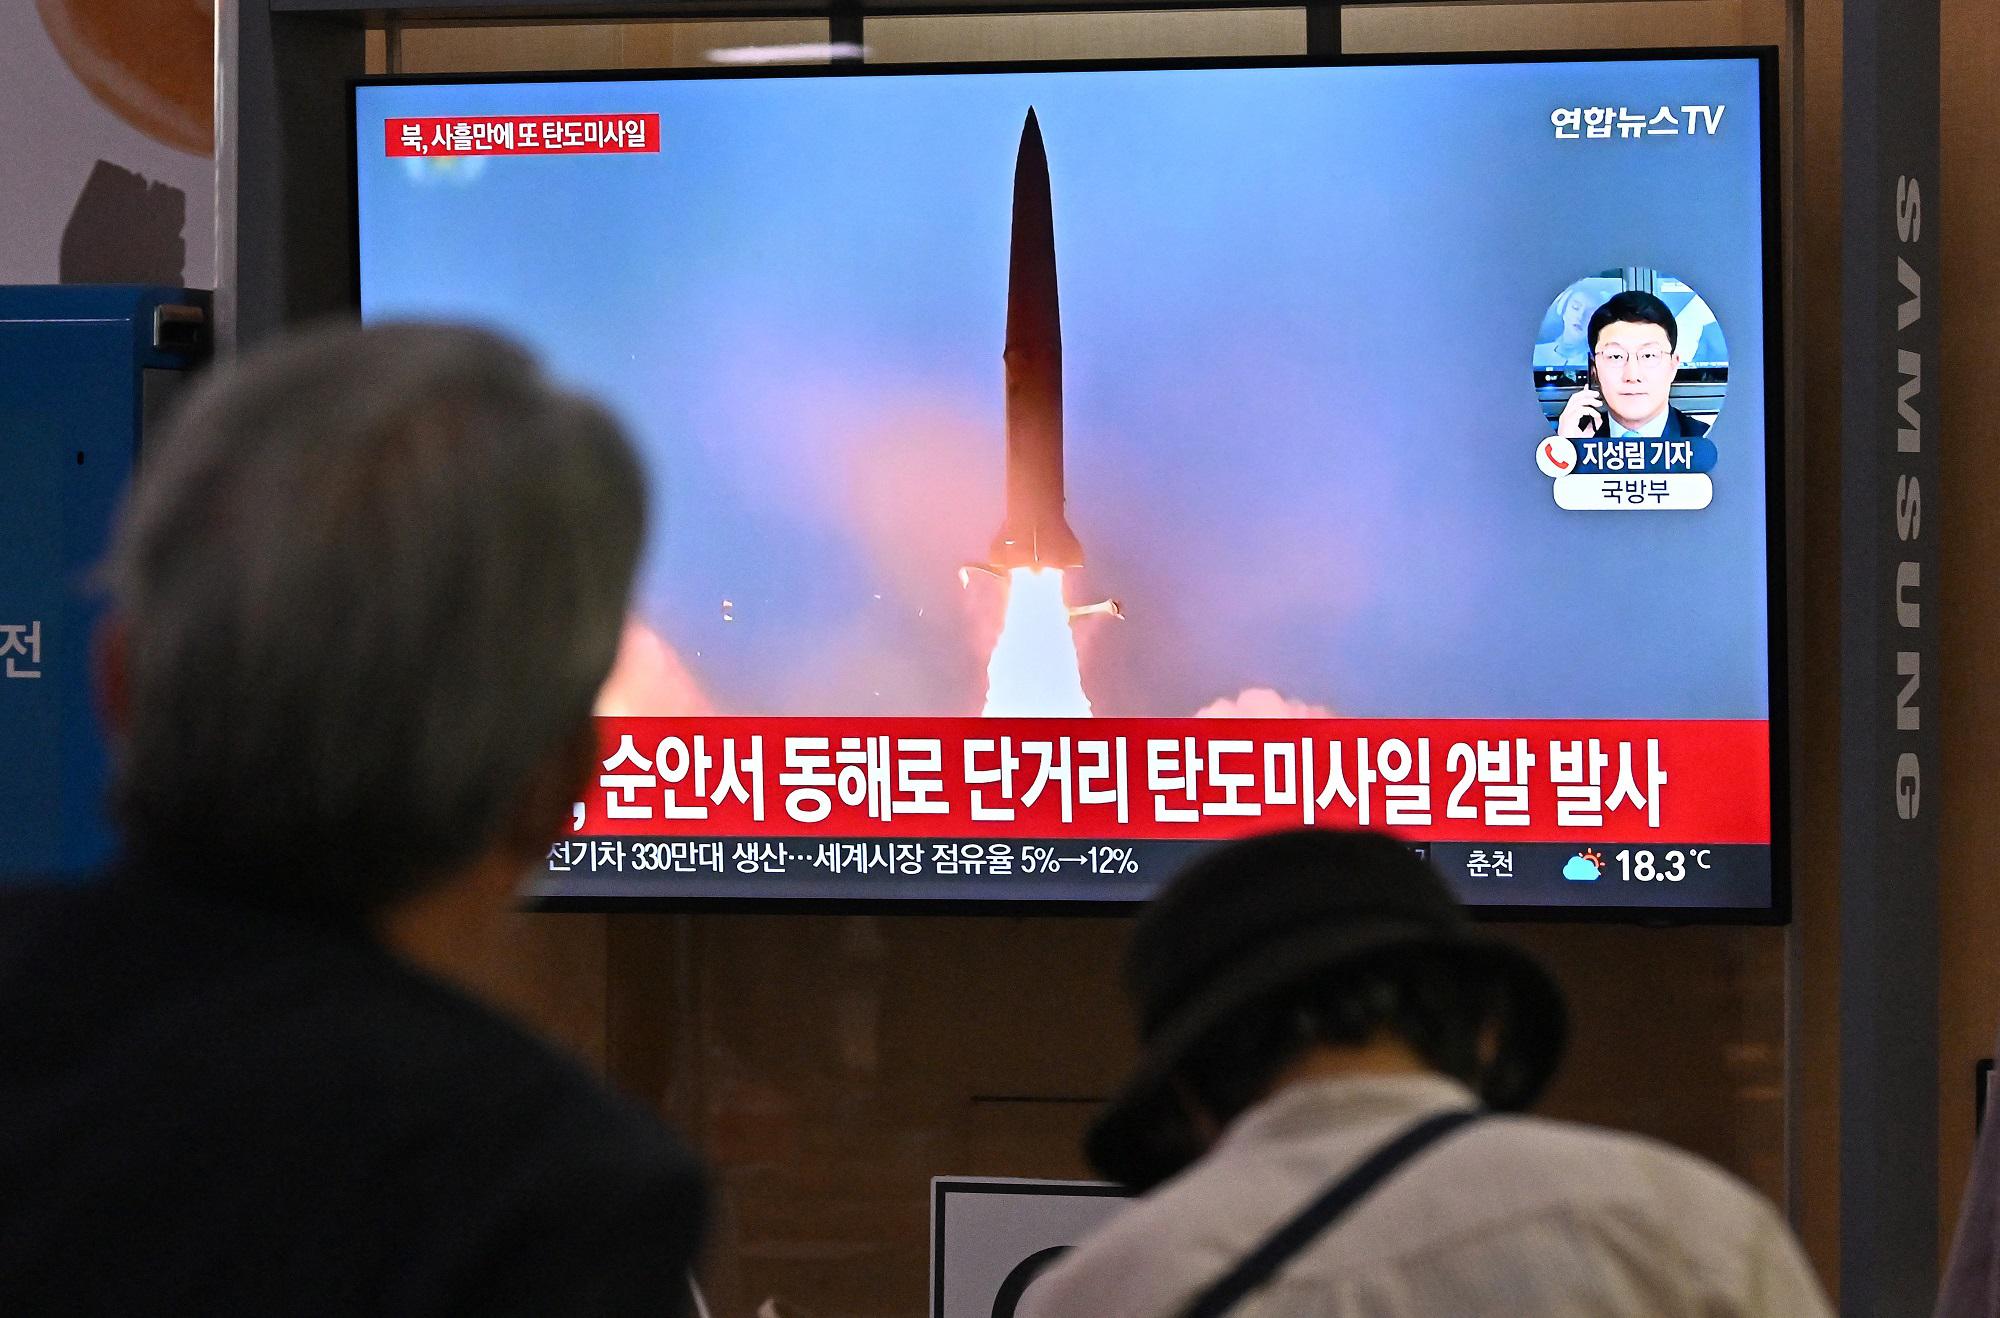 Corea del Nord, missile sorvola Giappone: scatta allarme "tutti nei rifugi"